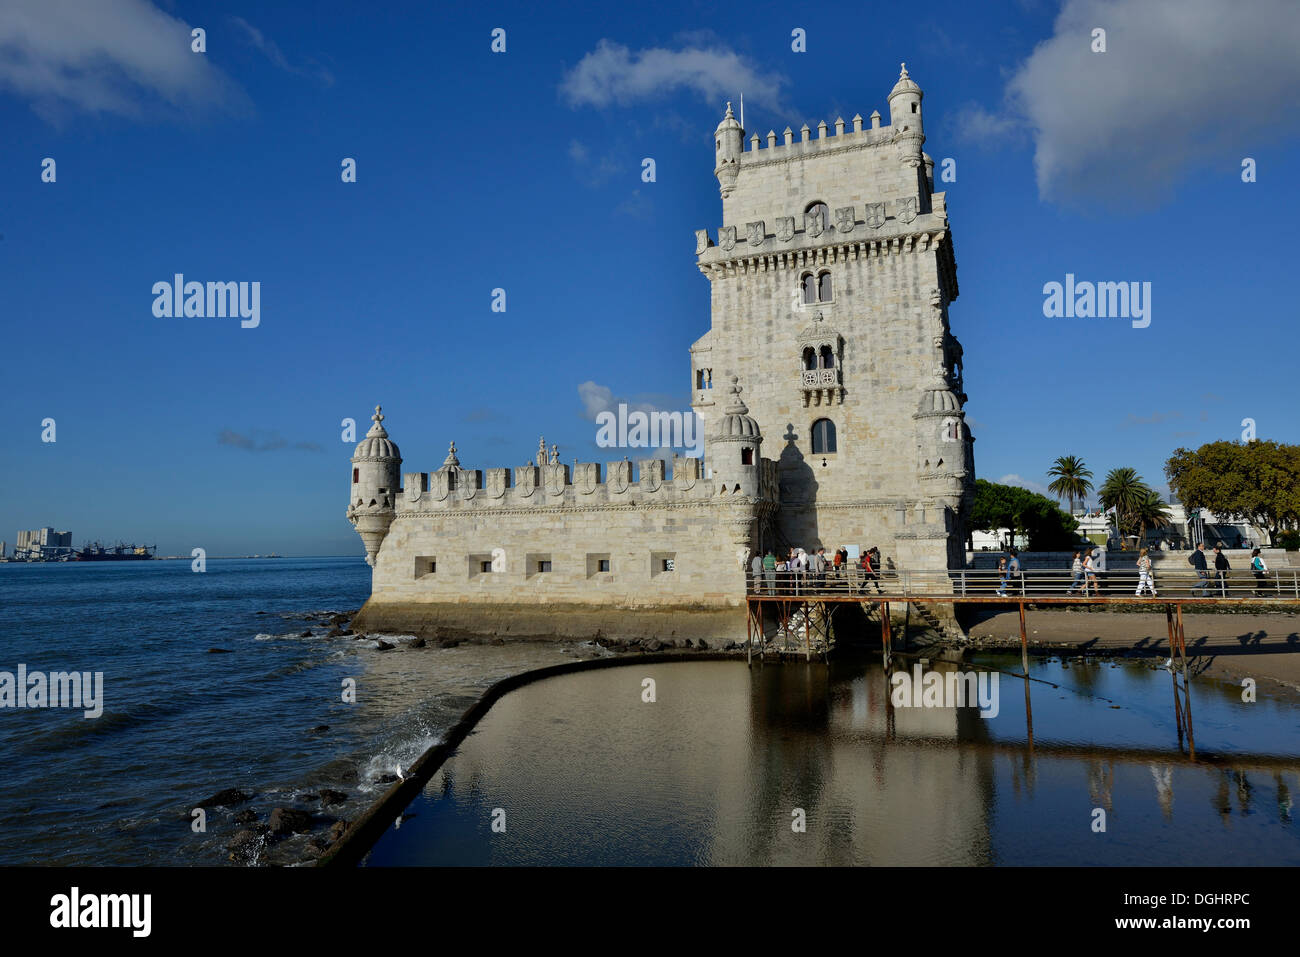 Torre de Belem Tower, construit en 1520 par Manuel I, Site du patrimoine mondial de l'UNESCO sur les rives du Tage, Belém, Lisbonne Banque D'Images